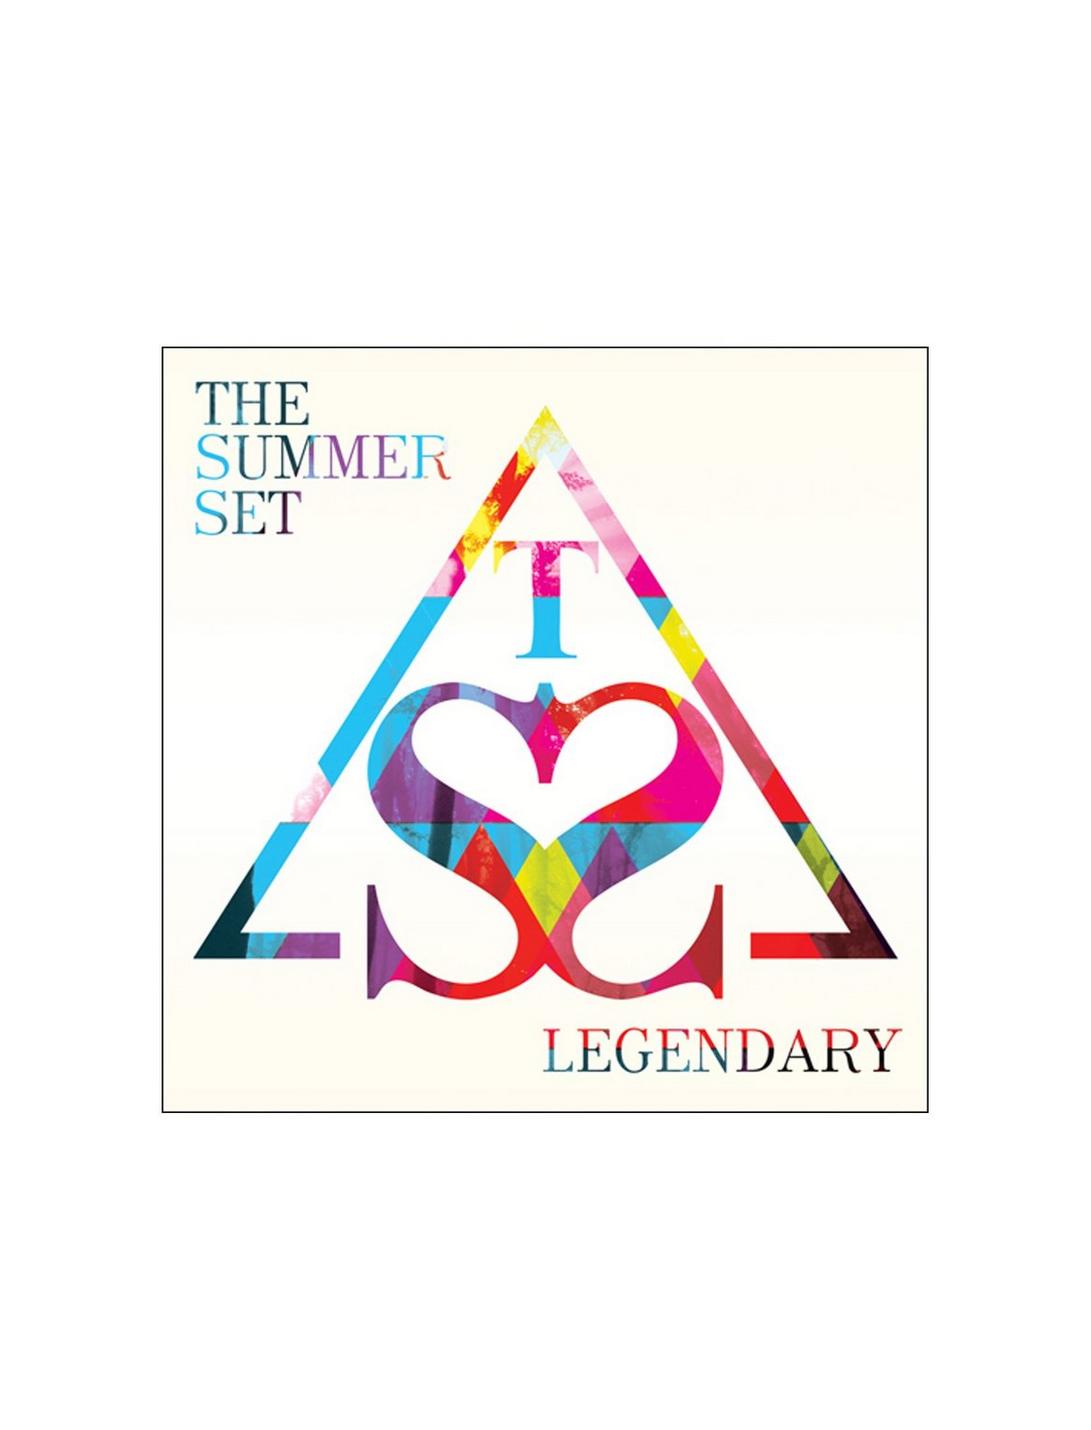 The Summer Set - Legendary CD, , hi-res